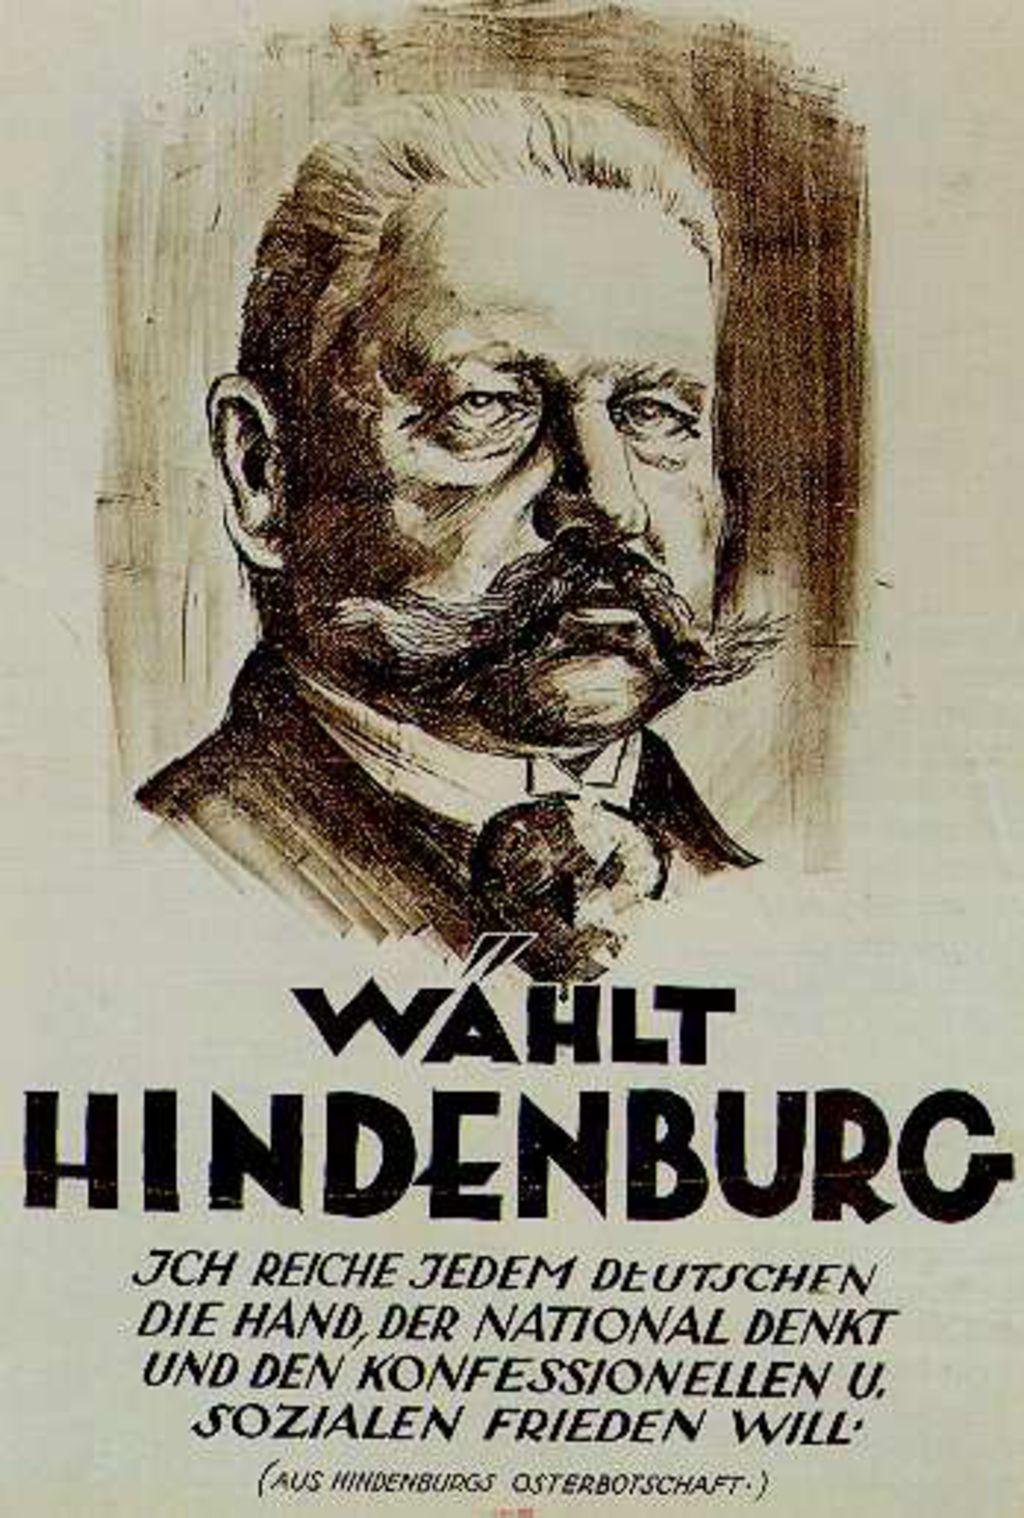 Exponat: Plakat: Reichspräsidentenwahl "Wählt Hindenburg", 1925